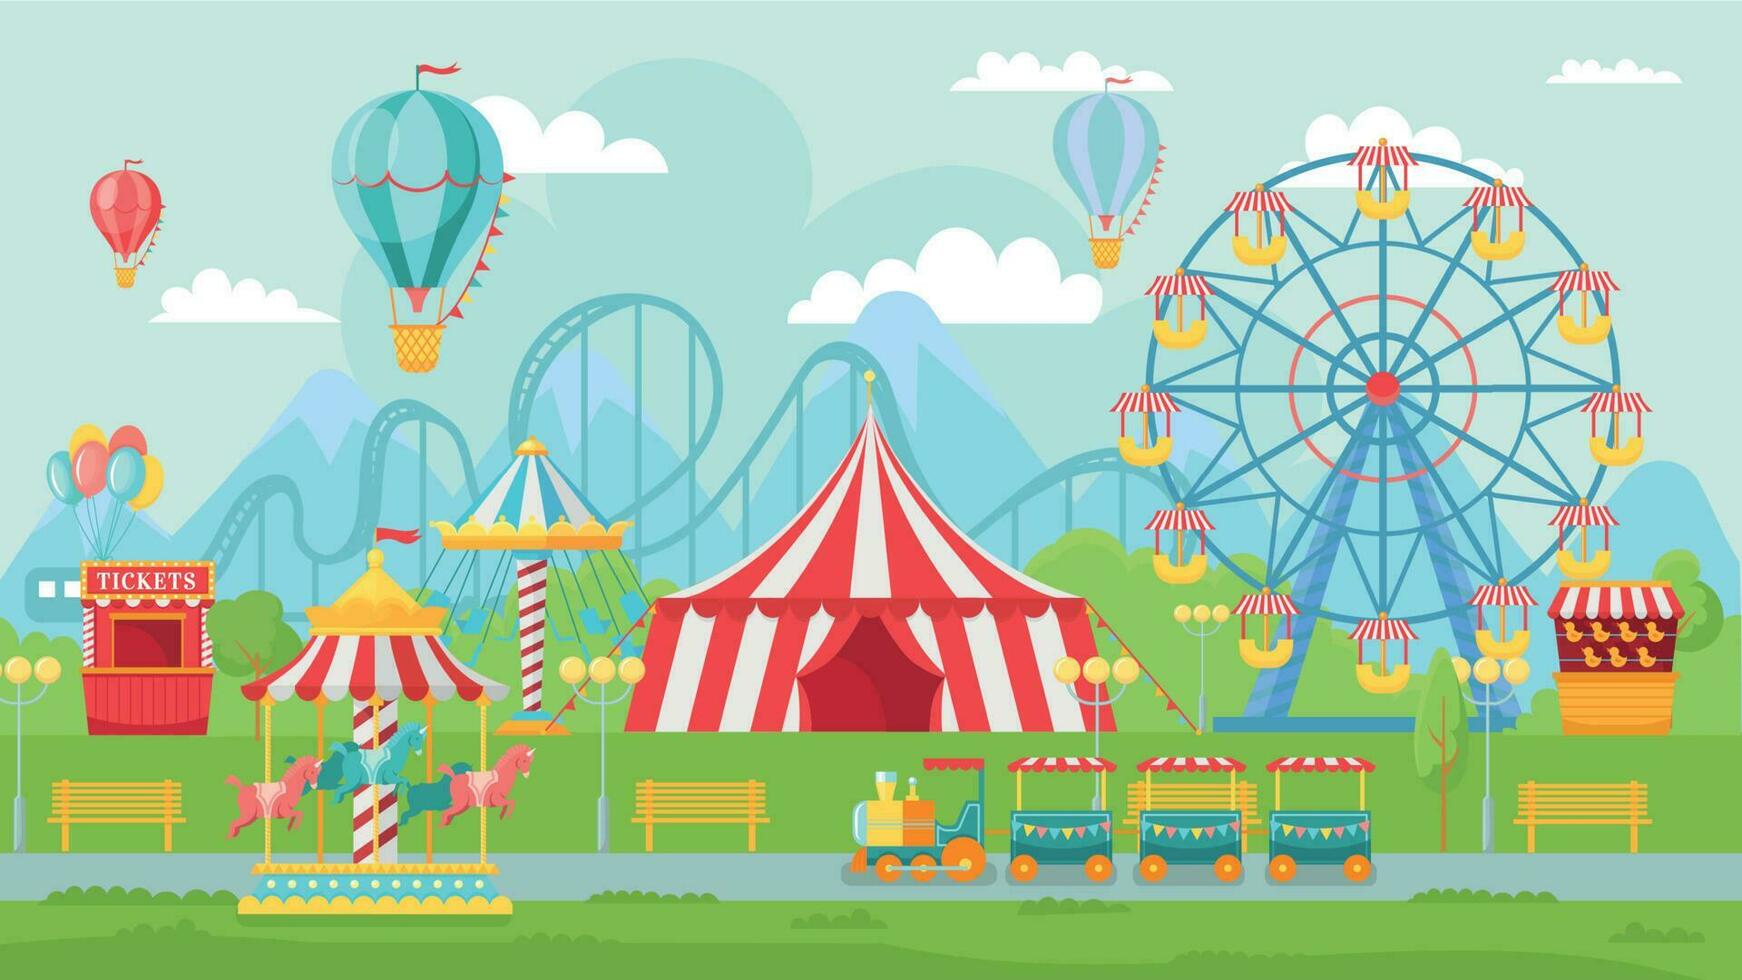 lustig Park Festival. Amüsement Sehenswürdigkeiten Landschaft, Kinder Karussell und Ferris Rad Attraktion Vektor Illustration